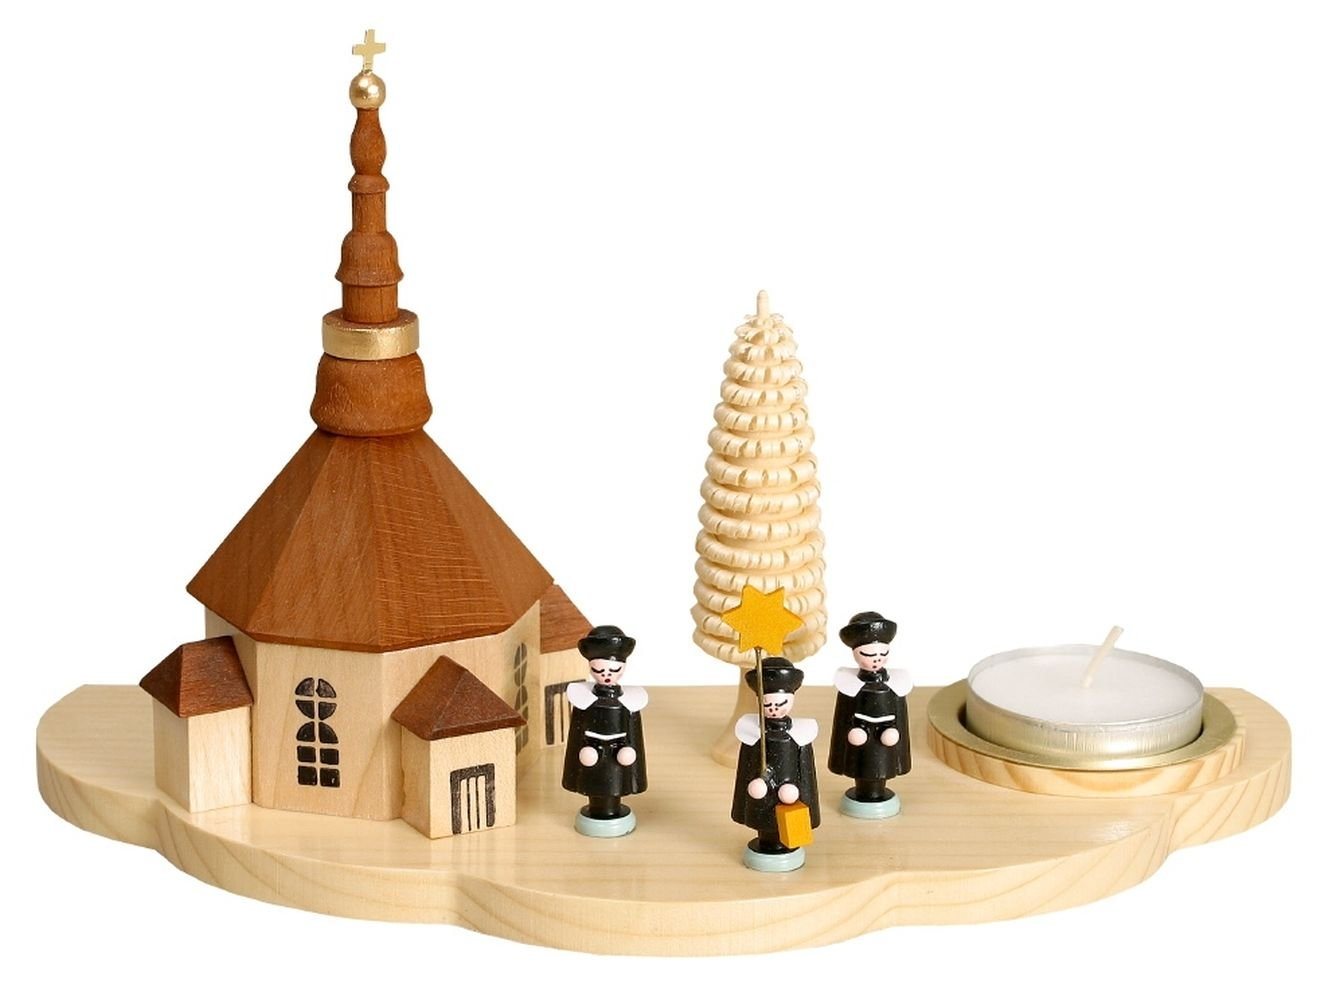 Teelichthalter Kerzenhalter Lichthalter mit Seiffener Kirche und Kurrende natur Teeli, Ringelbäumchen, naturfarbene achteckige Kirche, kleine Figuren von OTTO